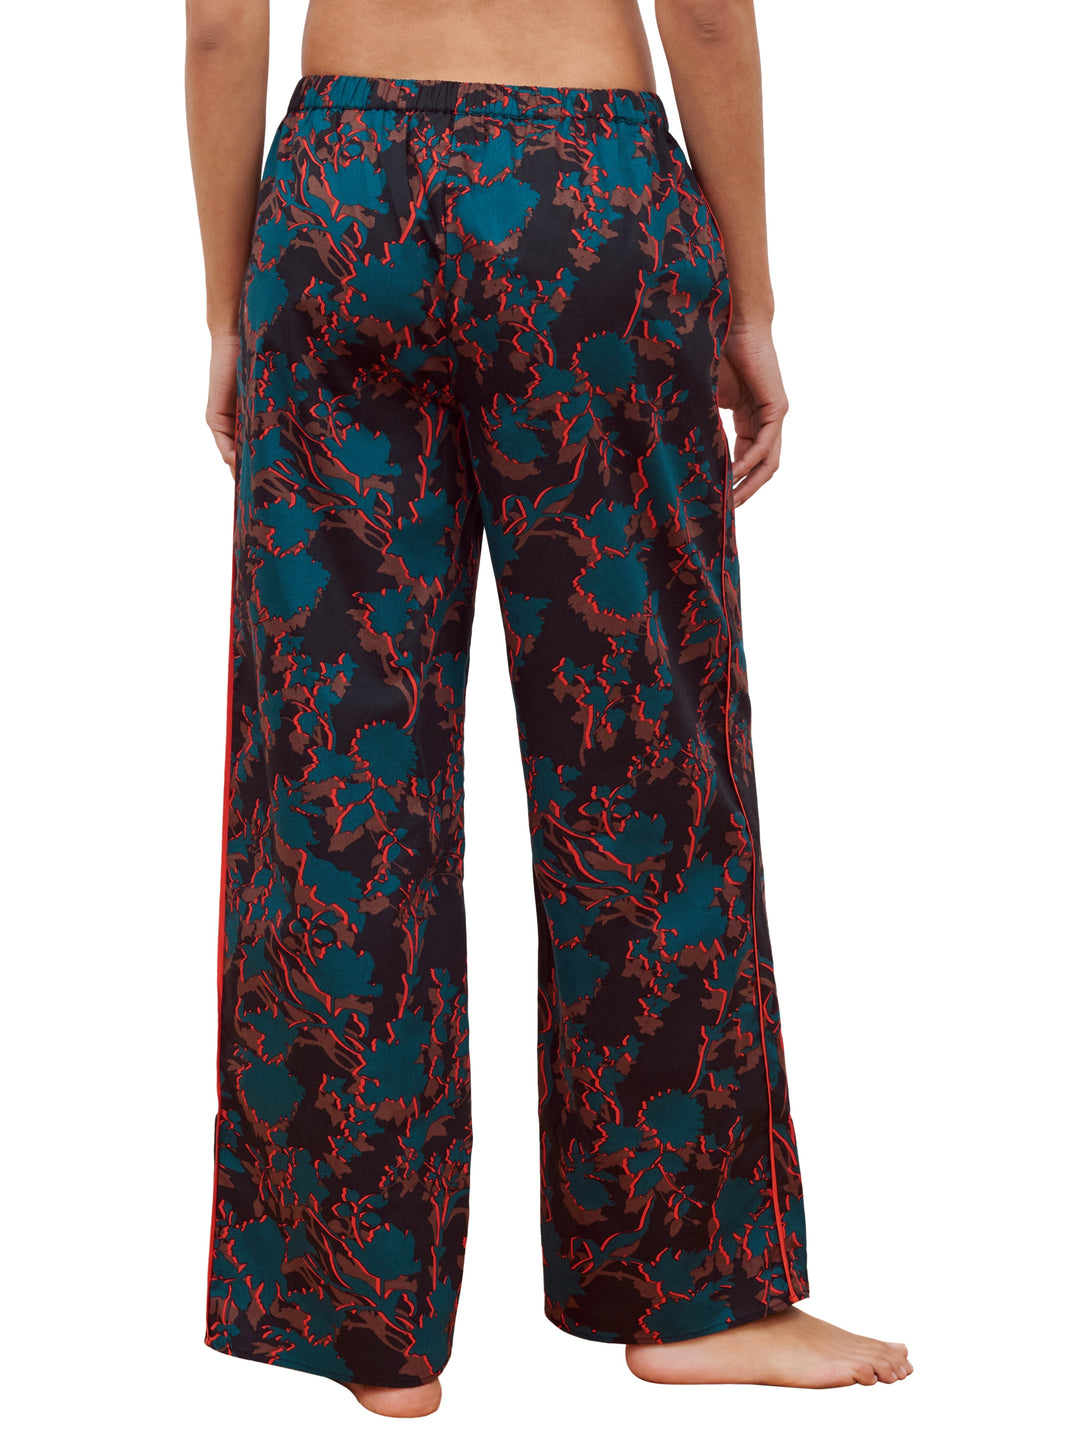 Passionata - Брюки-регги Разноцветные пижамные брюки Passionata